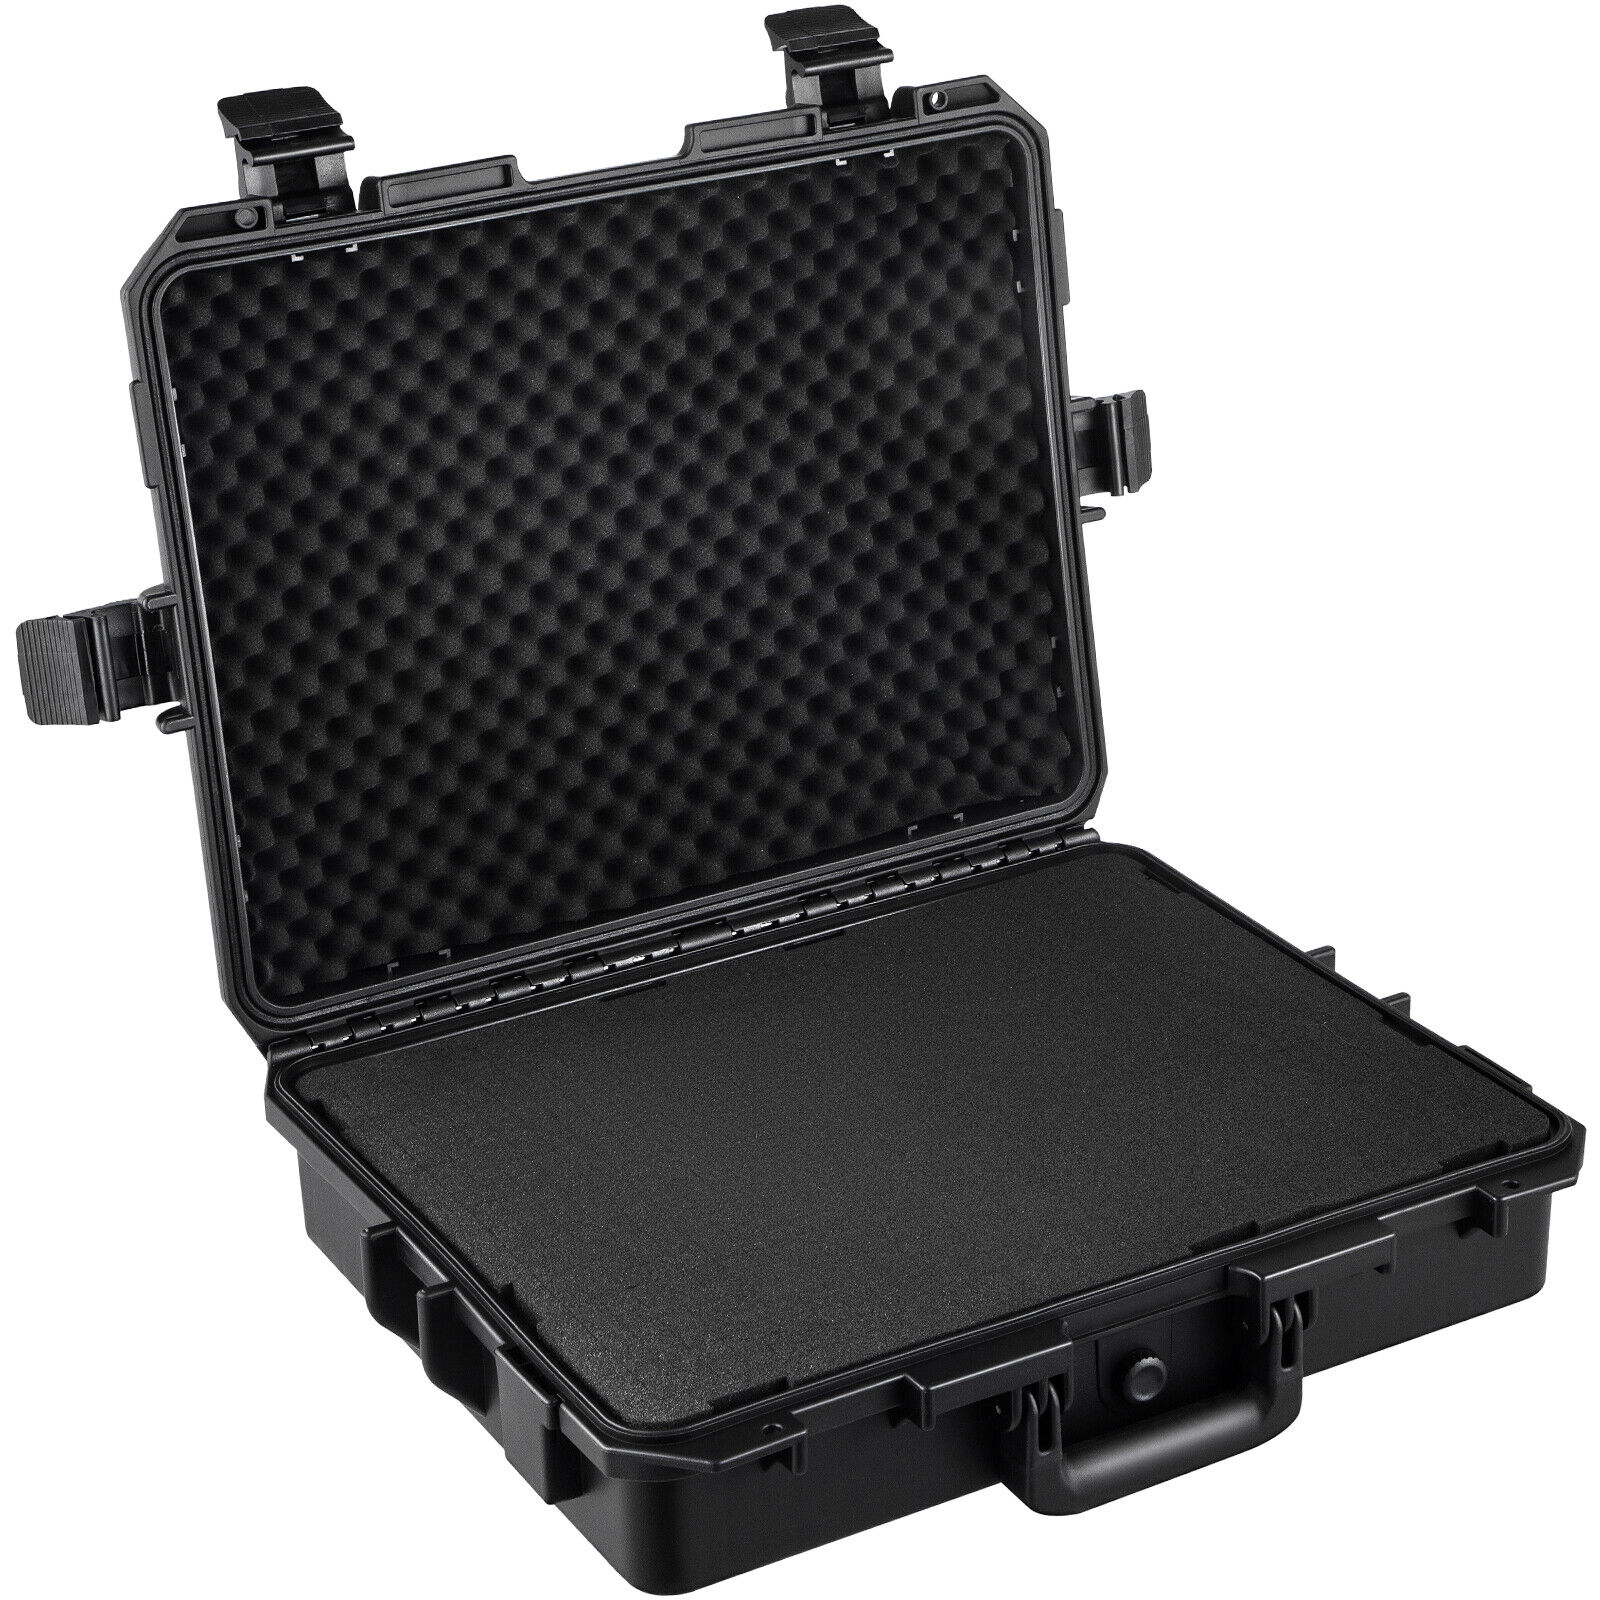 VEVOR IP67 Waterproof Hard Case 15-17 Inch Hard Carrying Case w/ Foam Insert